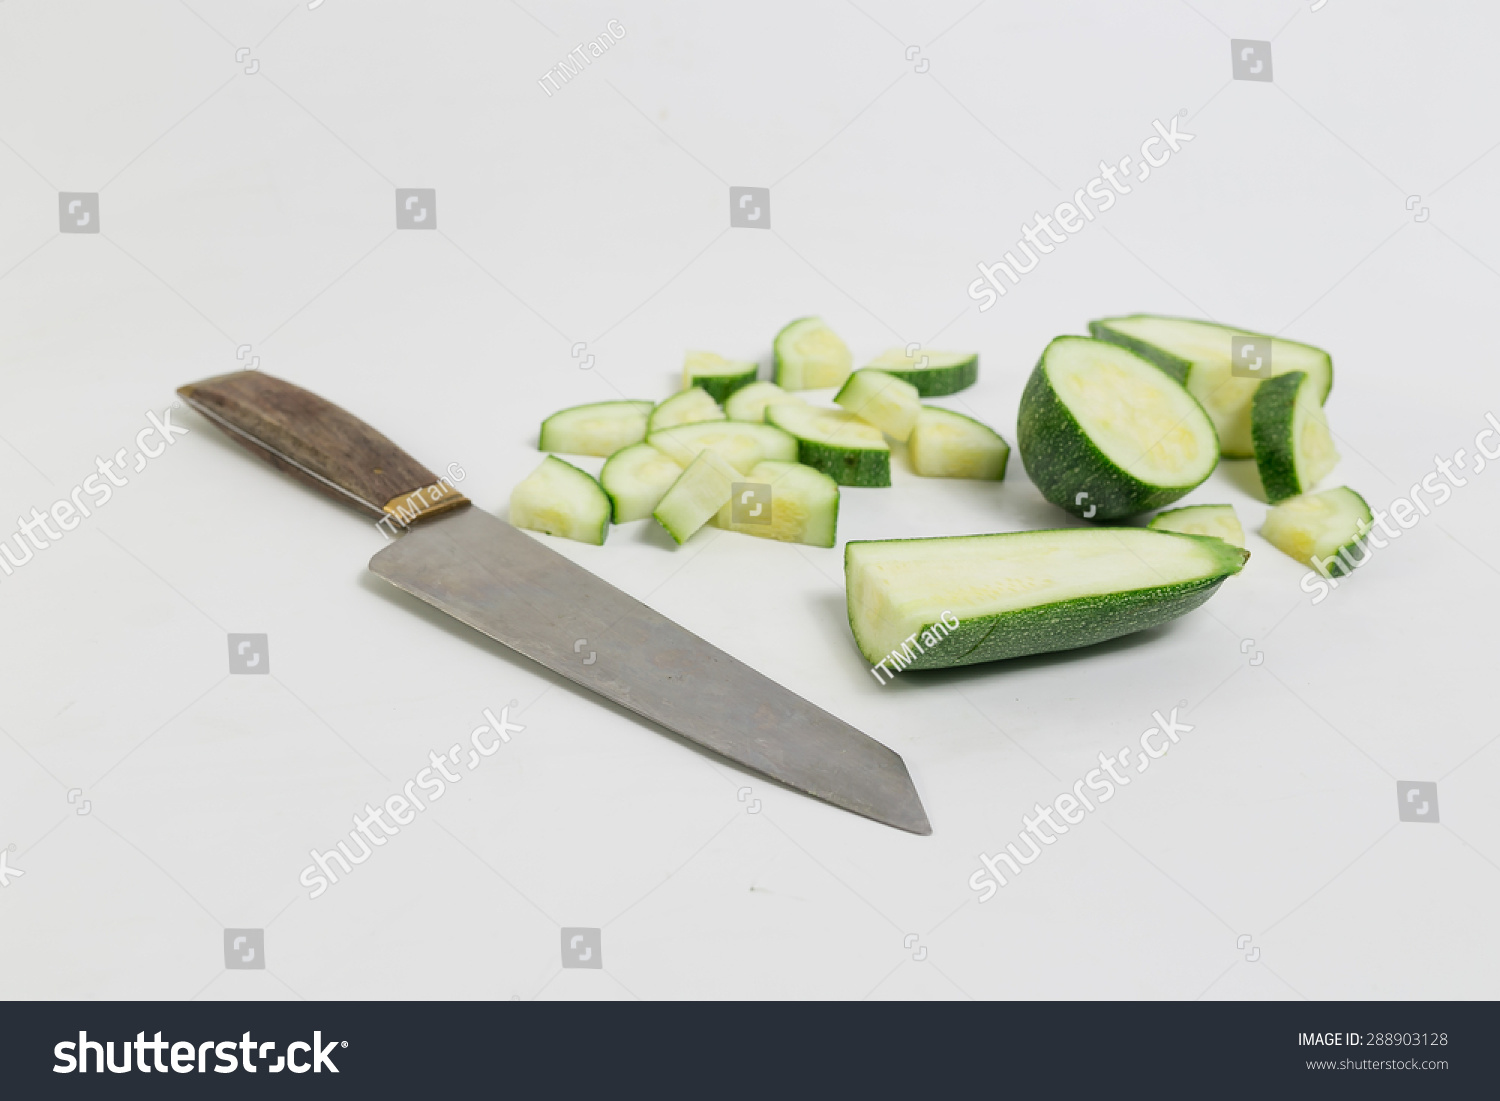 Knife cut cucumber #288903128